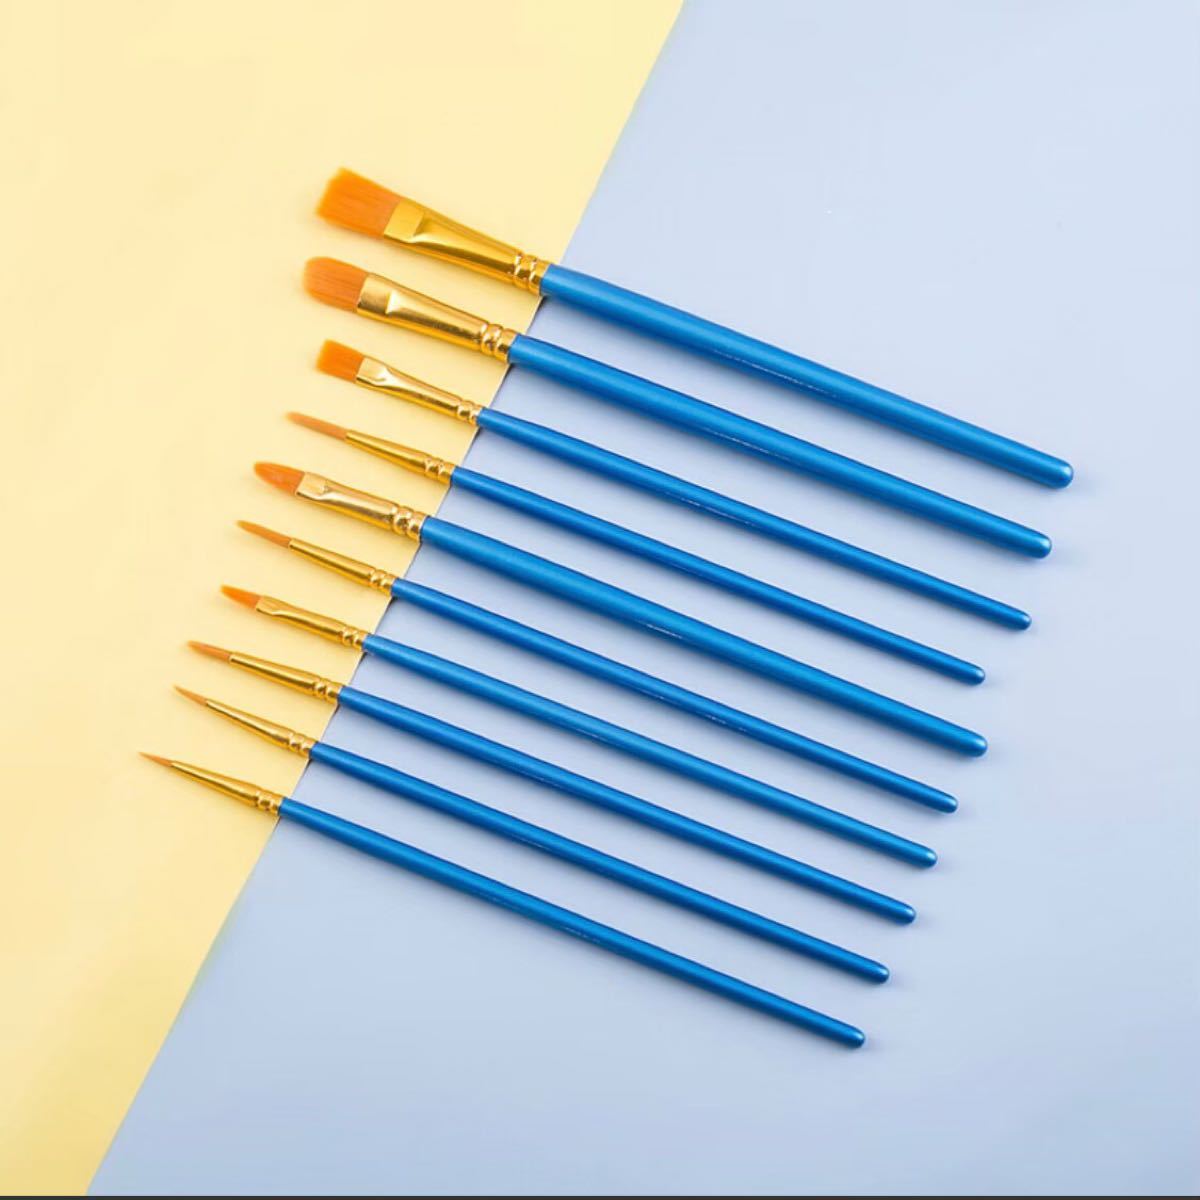 ペイントブラシ 10本セット 画材筆 アクリル筆 水彩筆  油絵筆 丸筆 平型筆 短毛筆 新品未使用 送料無料